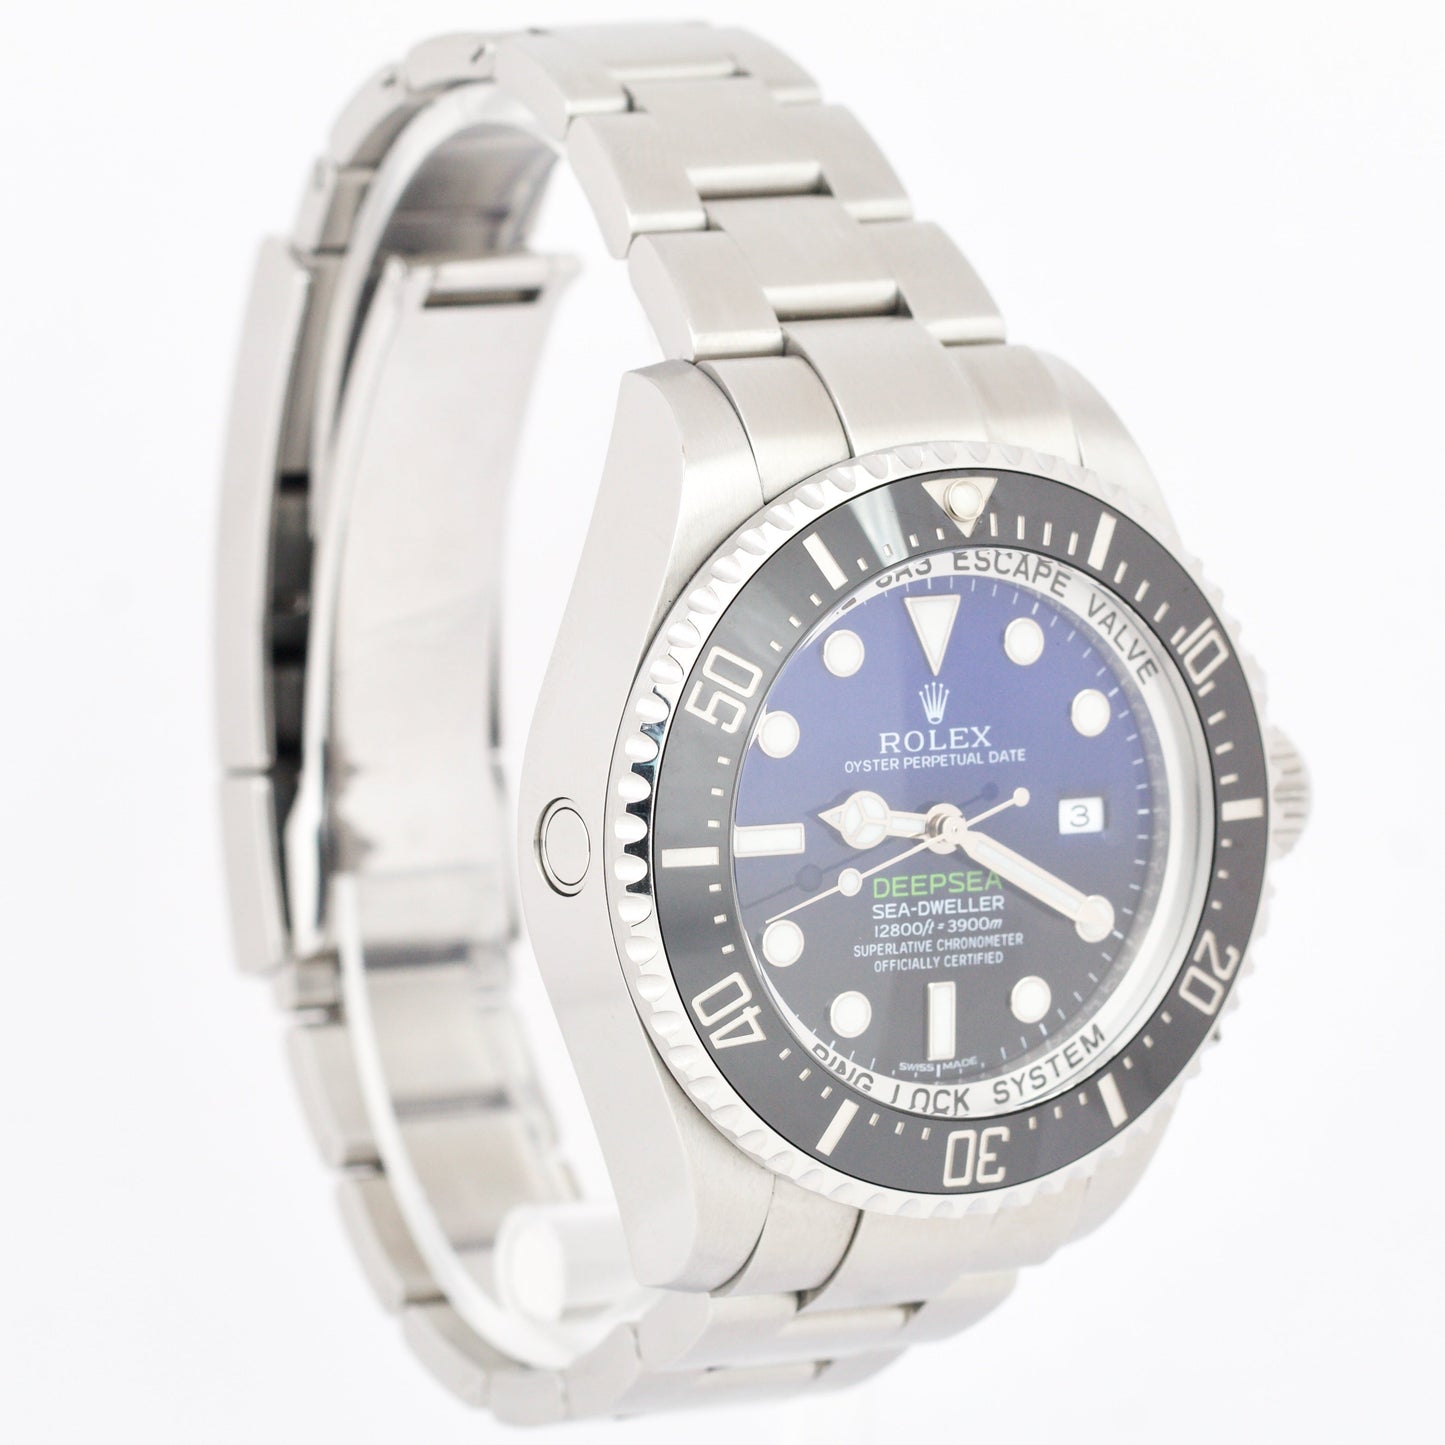 Rolex Sea-Dweller Deepsea 'James Cameron' Blue Stainless 116660 44mm Date Watch